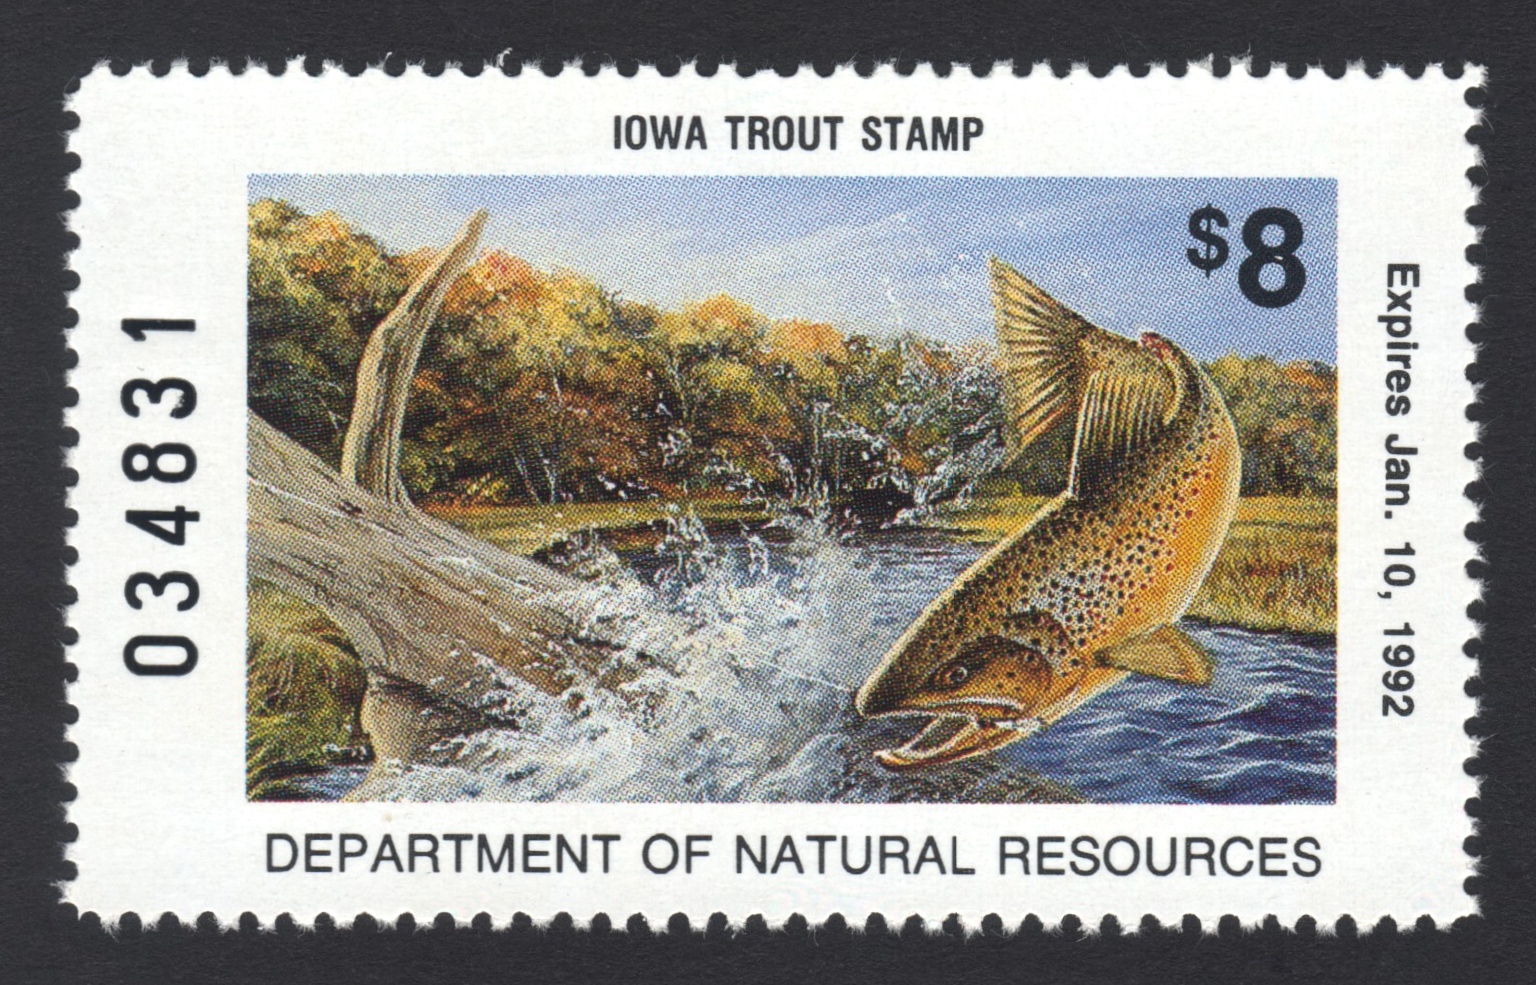 1991-92 Iowa Trout